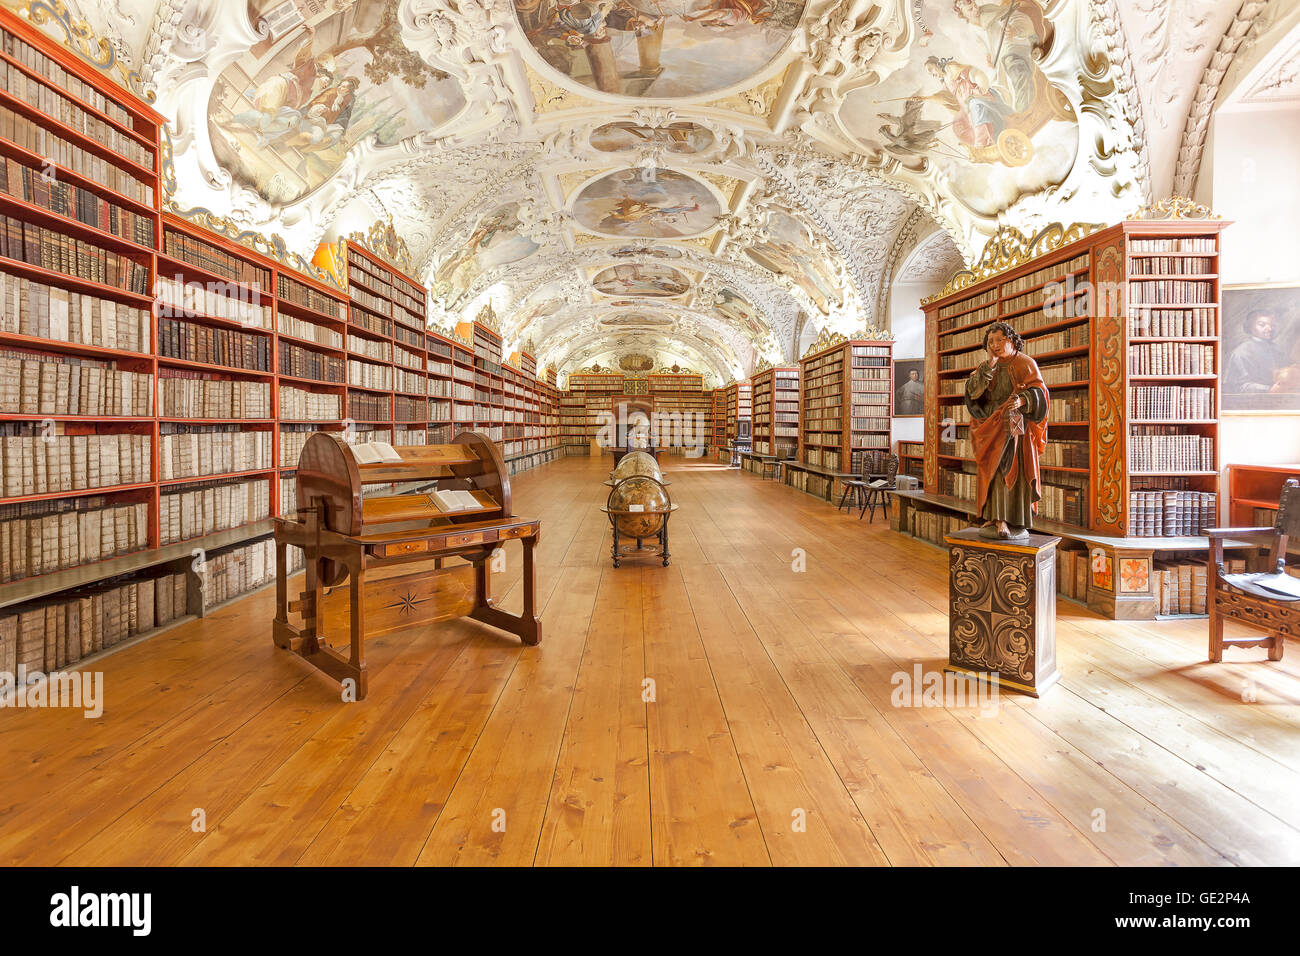 Prag, Tschechien - 15. Juni 2014: die theologische Hall in Strahov Kloster in Prag, einer der schönsten Bibliothek Innenräume Stockfoto